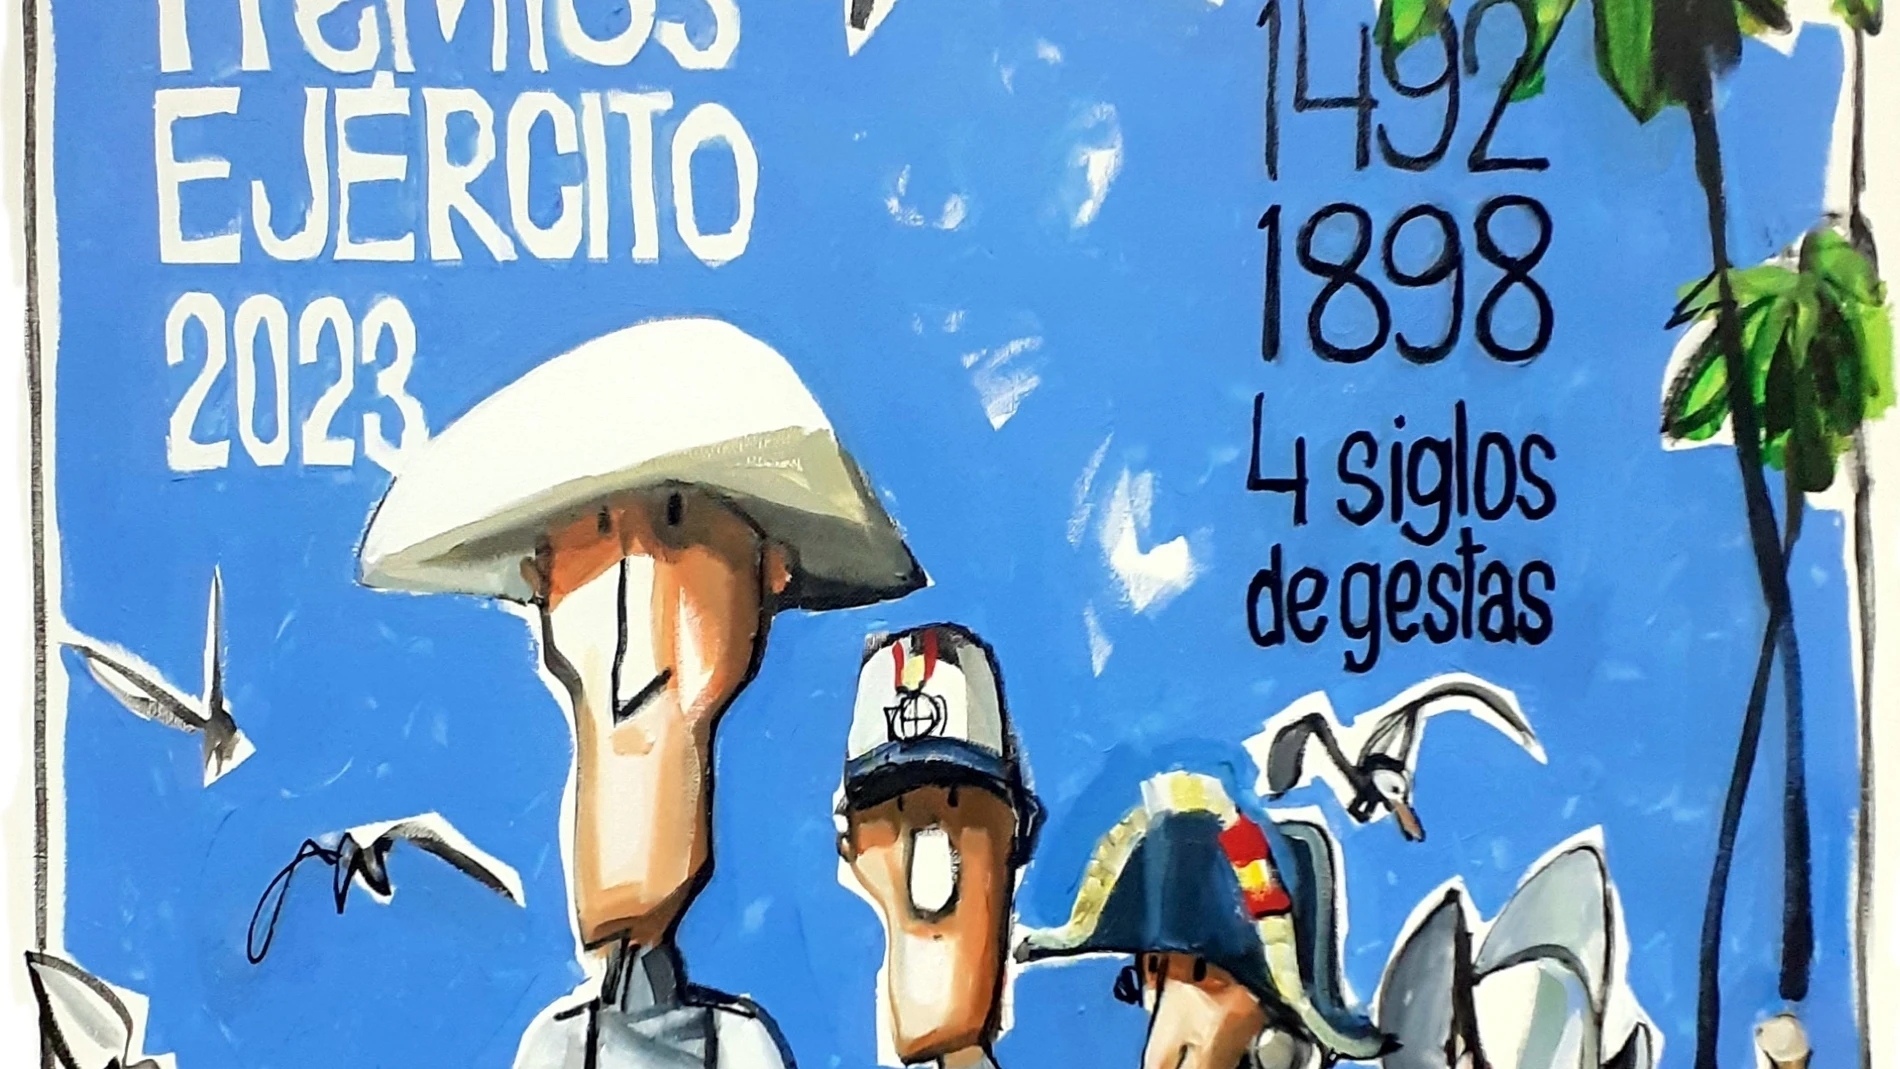 Cartel con motivo de la 59 edición de los Premios Ejército, elaborado por Esteban, dibujante de LA RAZÓN